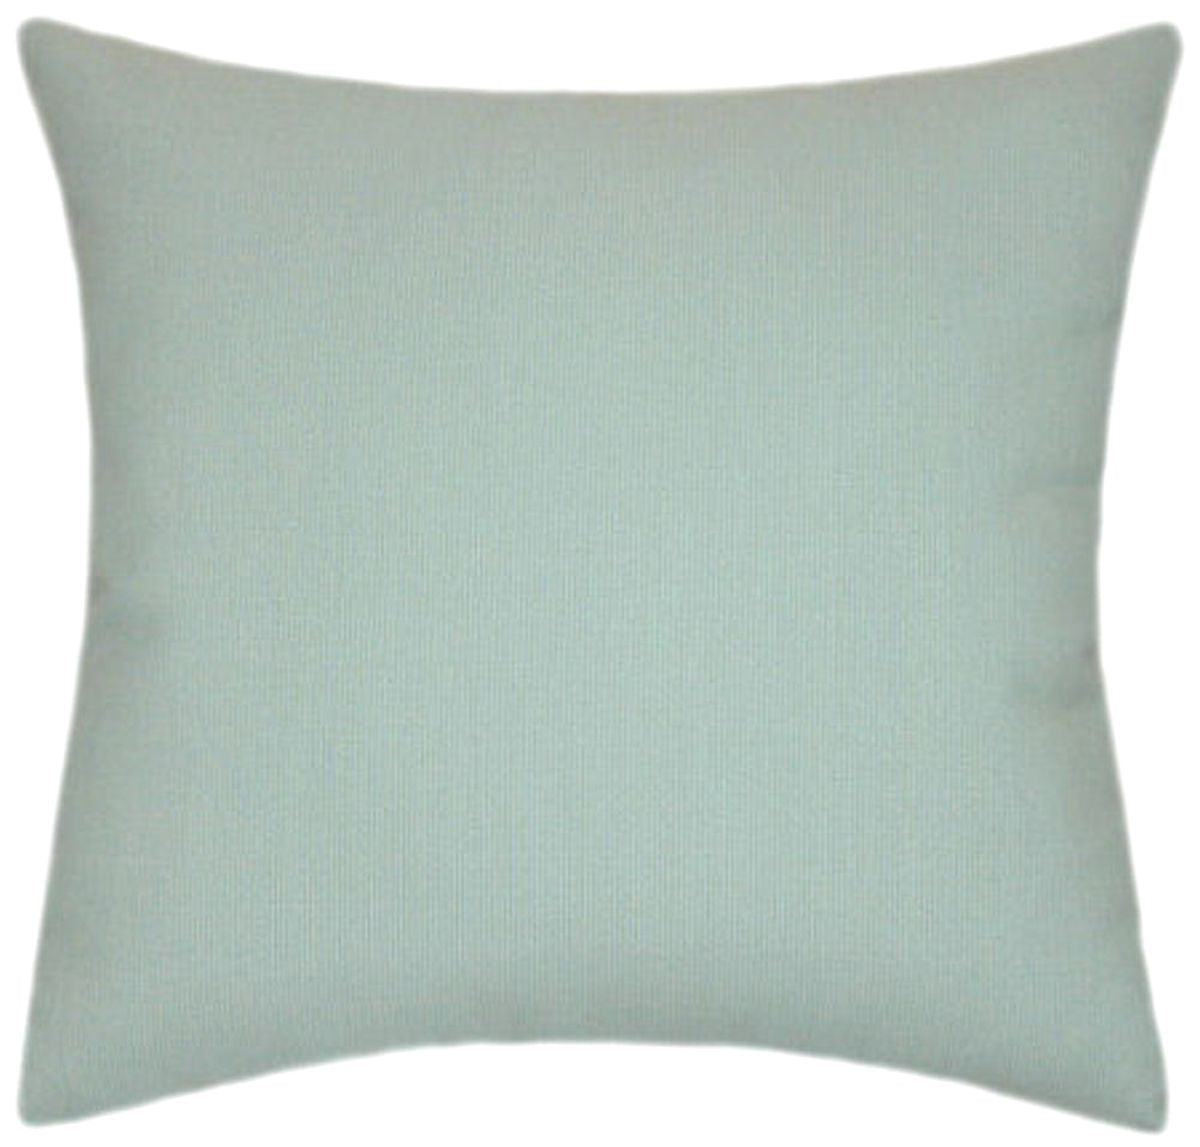 Sunbrella® Spectrum Mist Indoor/Outdoor Textured Solid Color Pillow